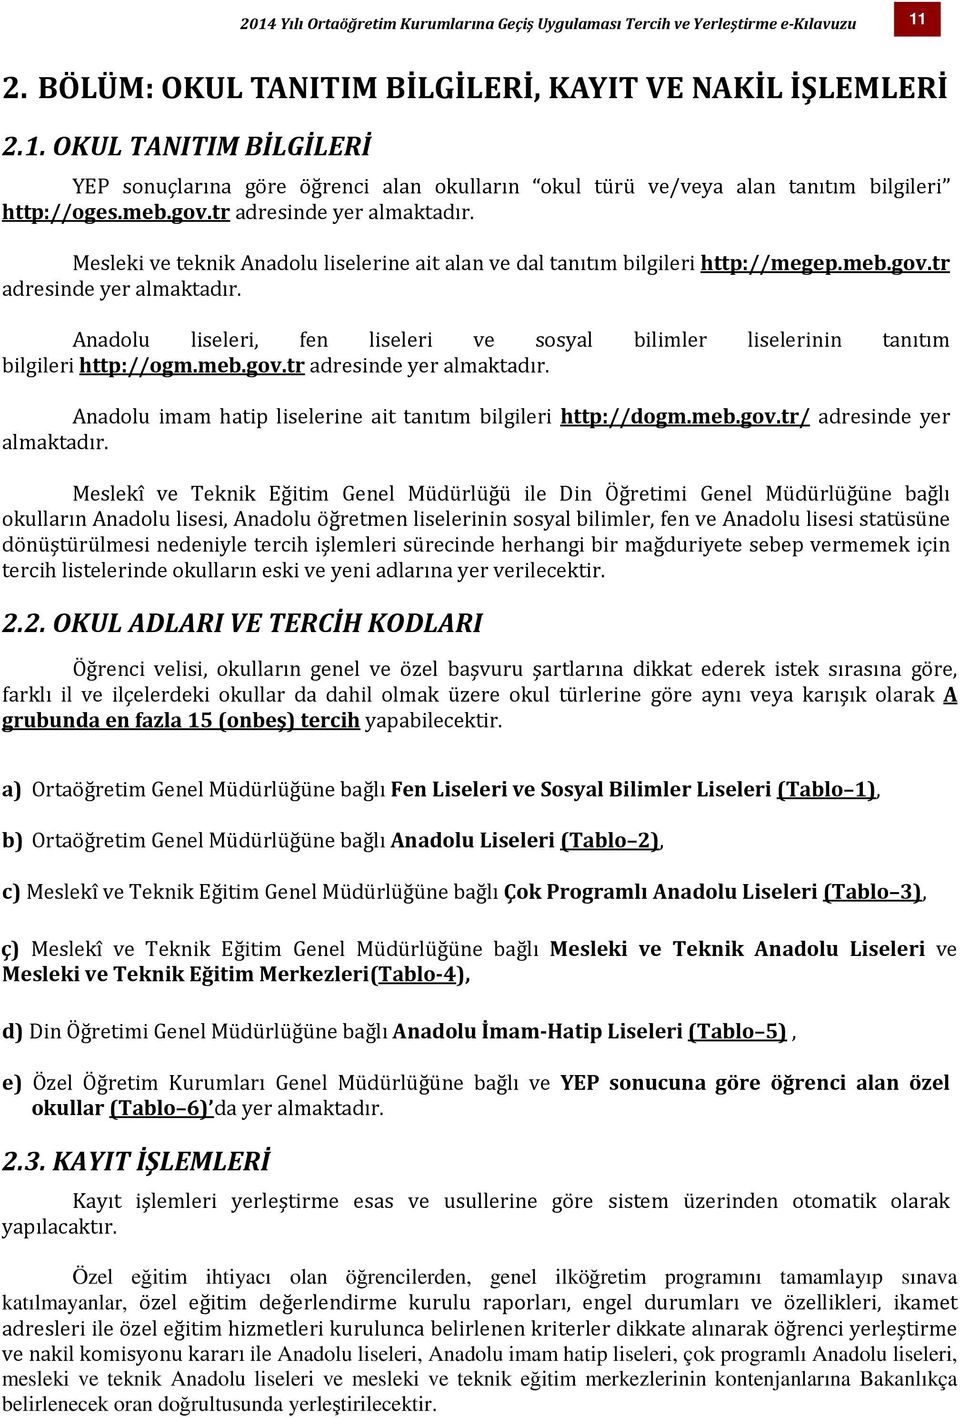 meb.gov.tr adresinde yer almaktadır. Anadolu imam hatip liselerine ait tanıtım bilgileri http://dogm.meb.gov.tr/ adresinde yer almaktadır.